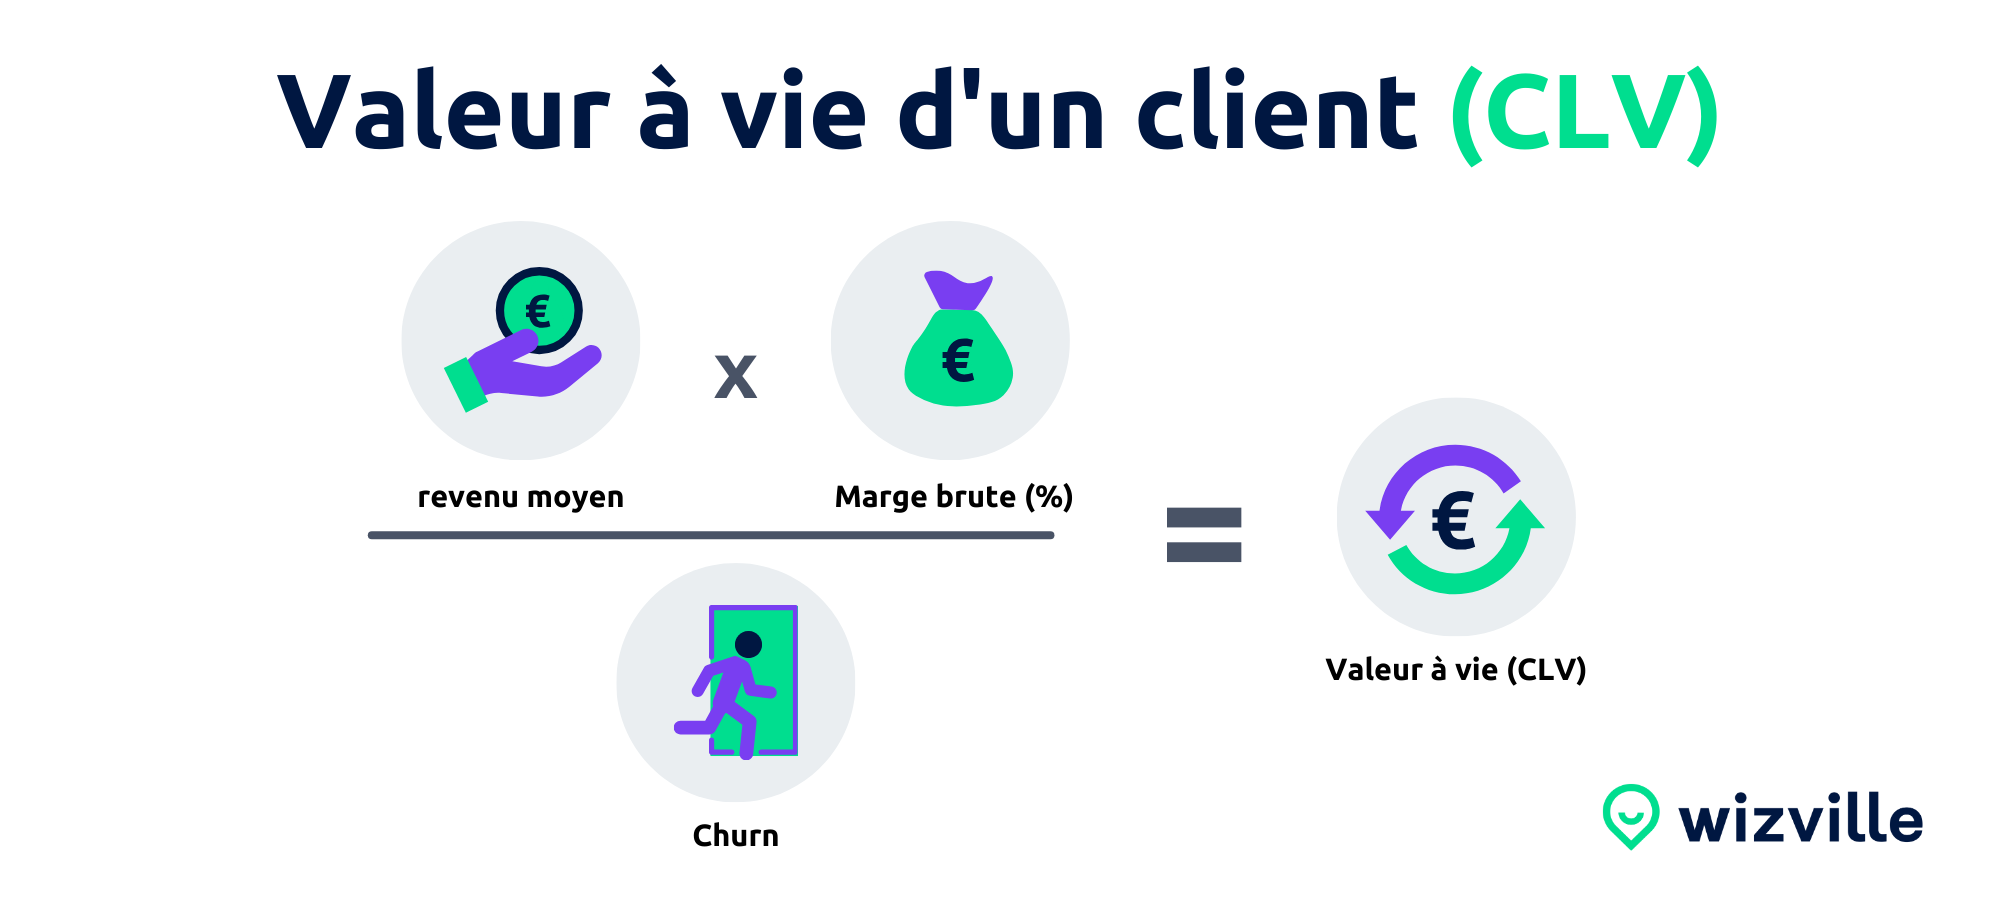 Calcul-Valeur-A-Vie-Client-CLV